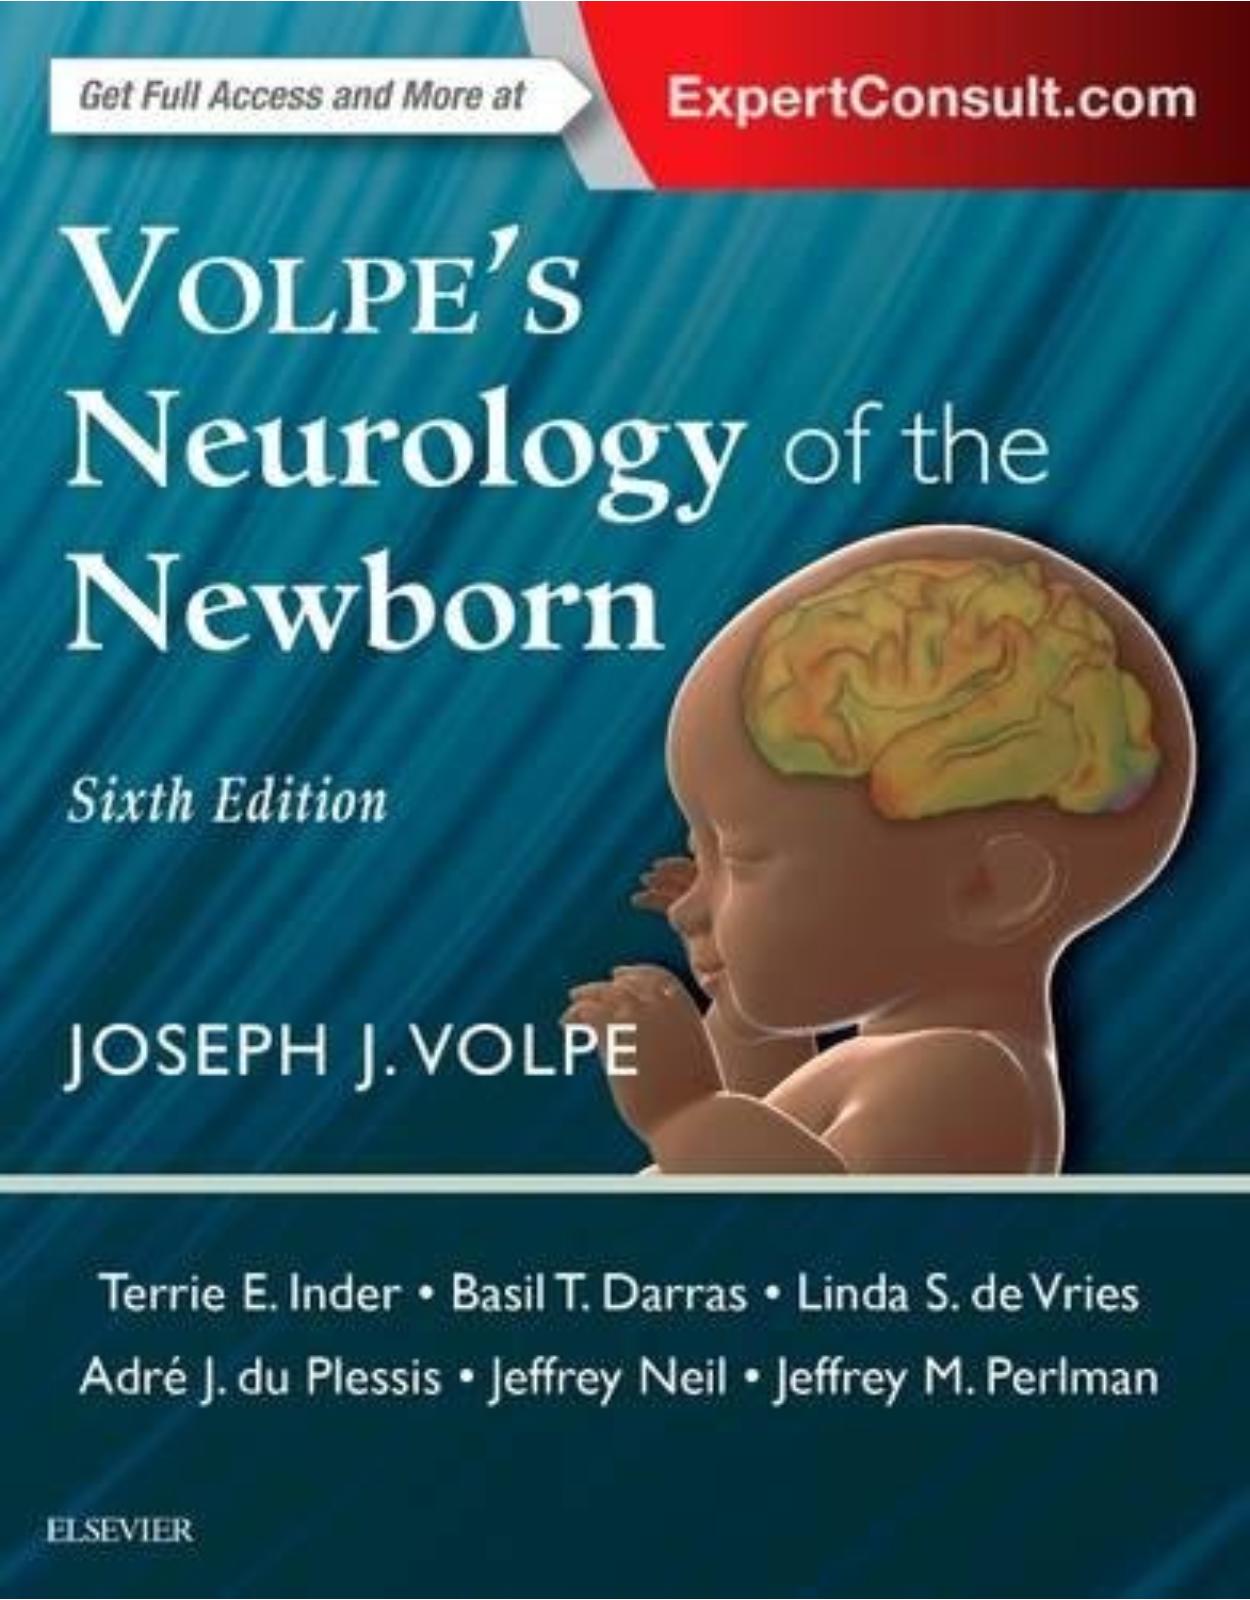 Volpe’s Neurology of the Newborn, 6e